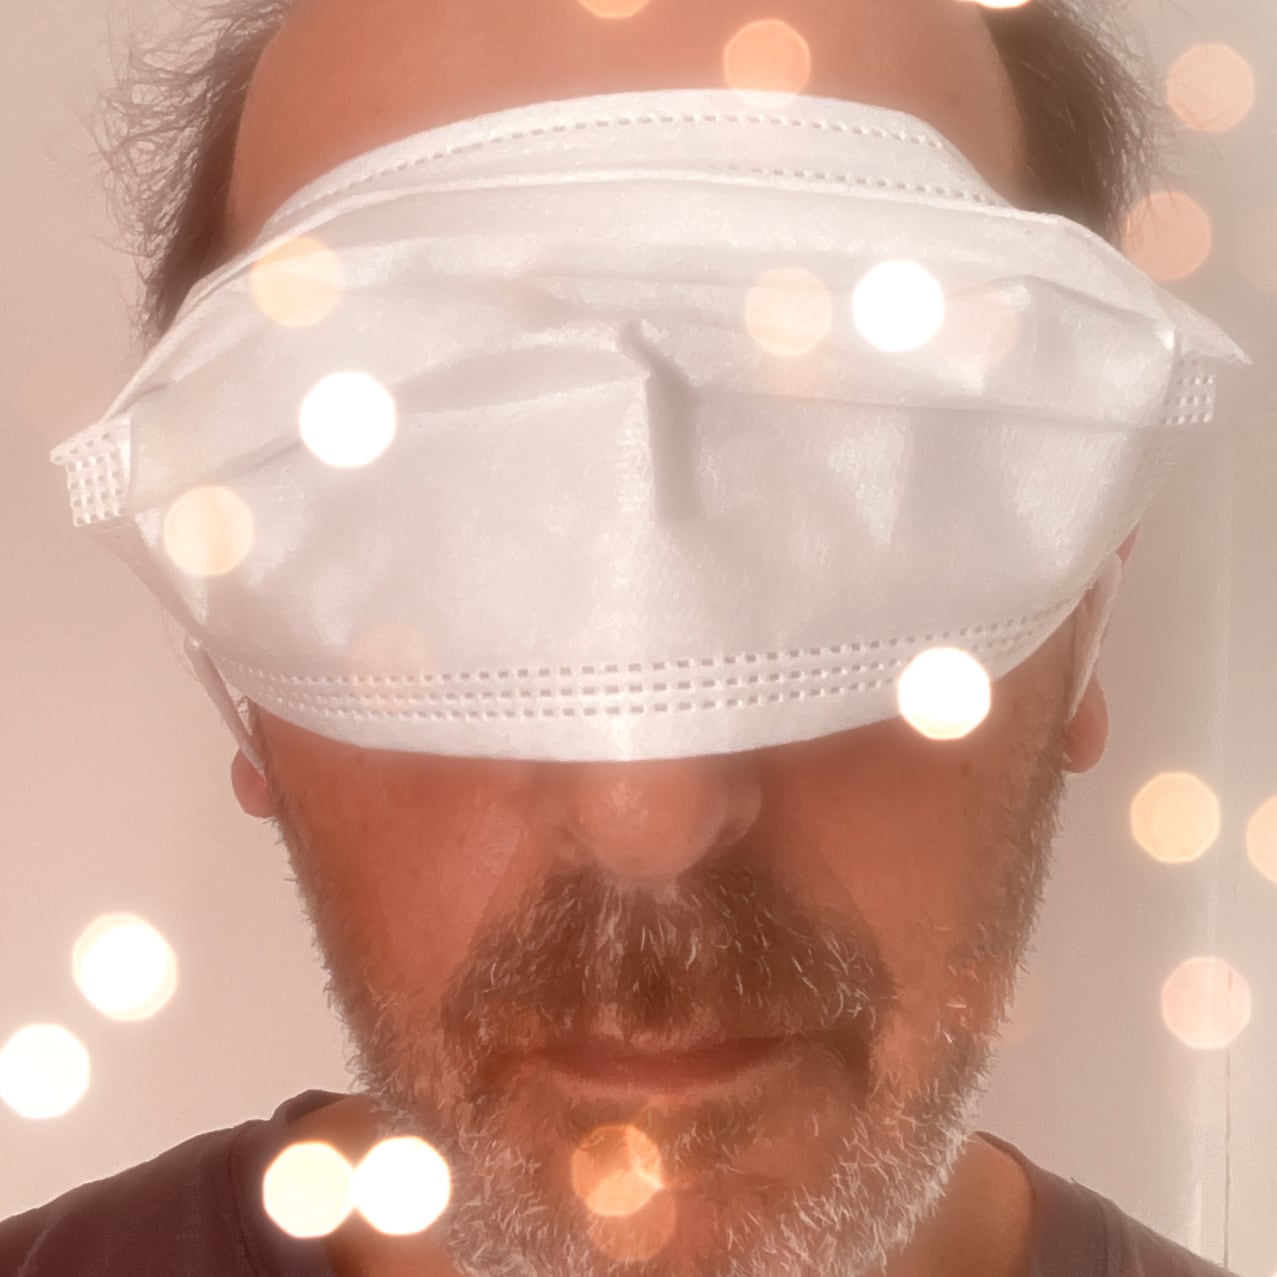 Ma tronche avec un masque FFP2 sur les yeux, avec des effets de bokeh pour faire disco, même si le morceau est tout sauf disco.